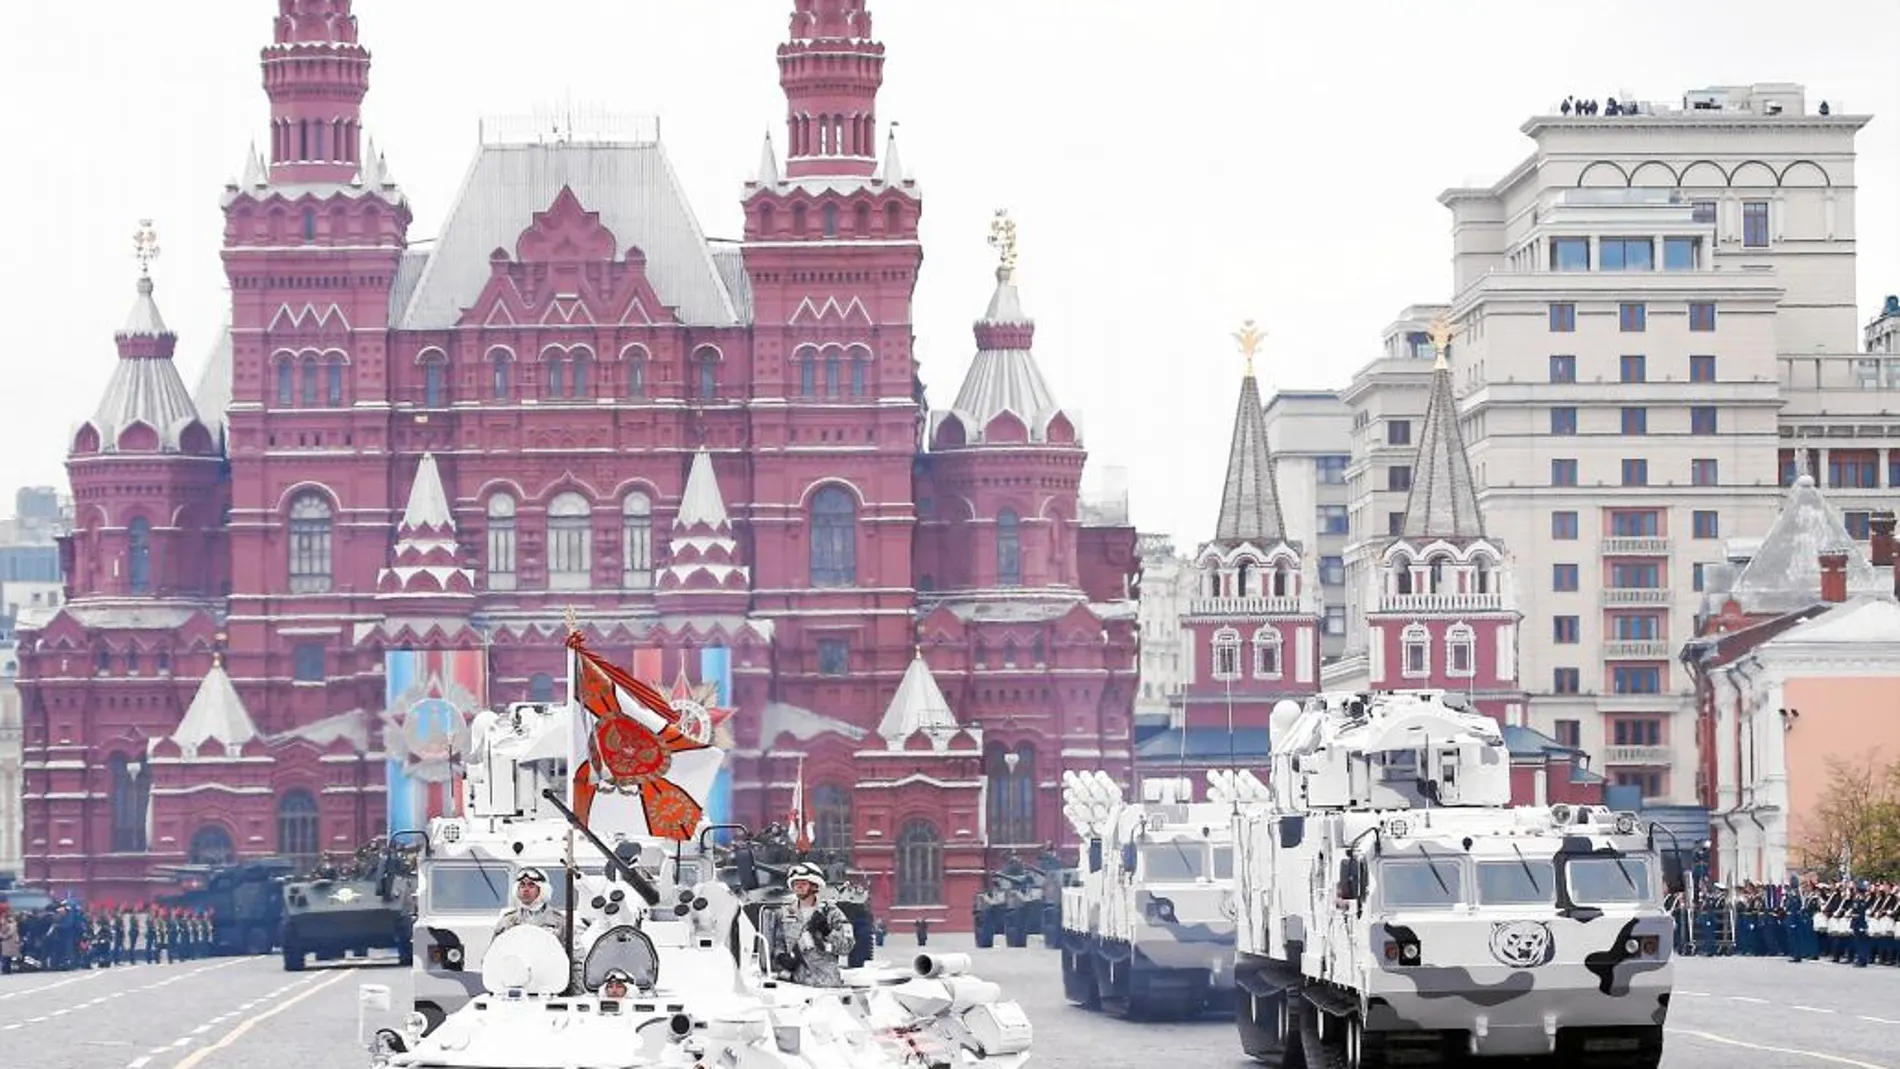 Sistemas antiaéreos del Ártico conocidos como Tor-M2DT y Pantsir-SA durante los desfiles celebrados en 28 ciudades rusas